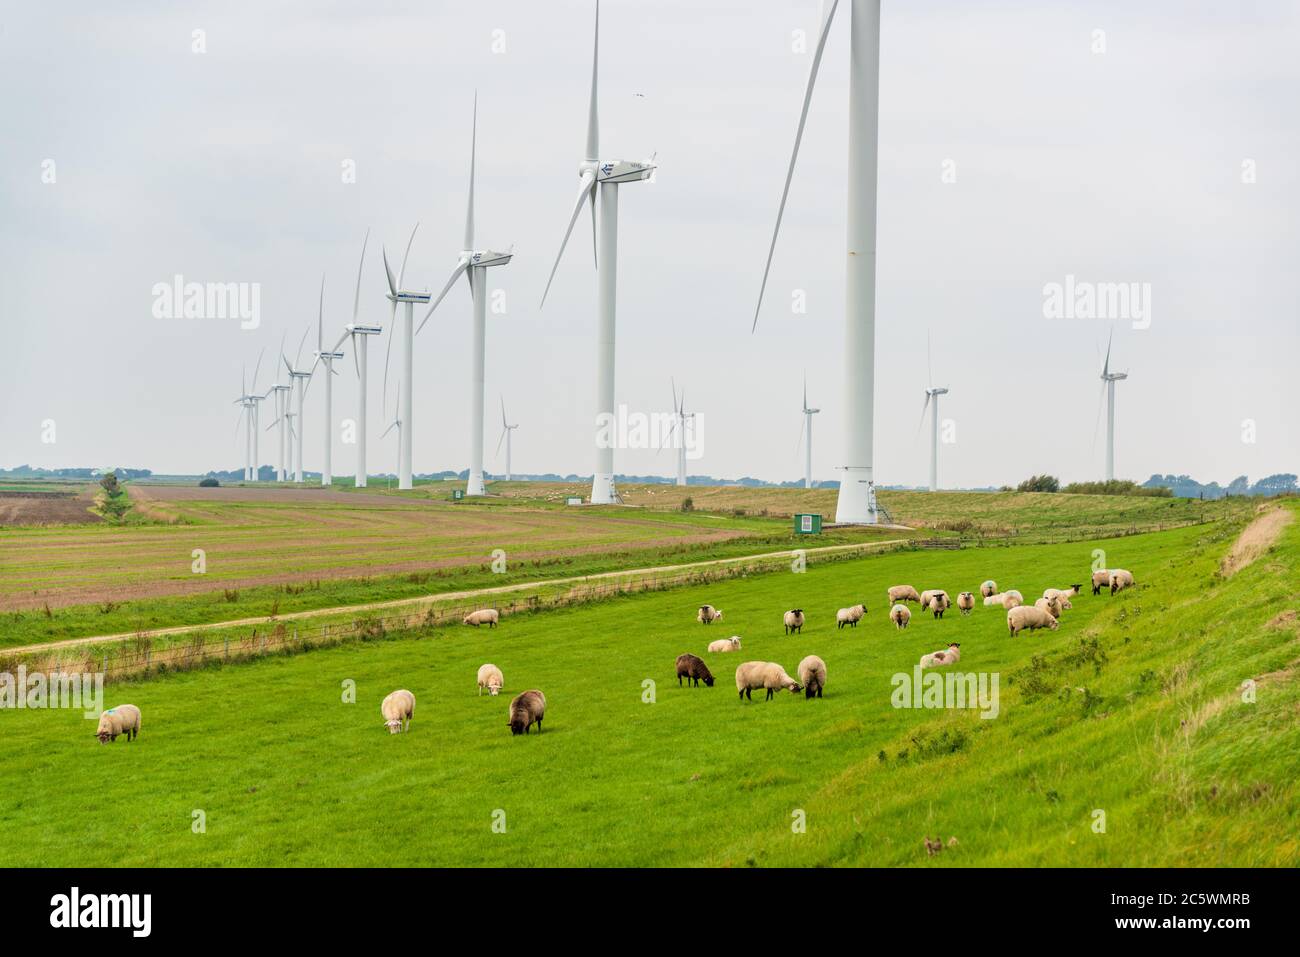 Windkraftanlagen an einem Deich an der Norseeküste mit weidenden Schafen Stock Photo